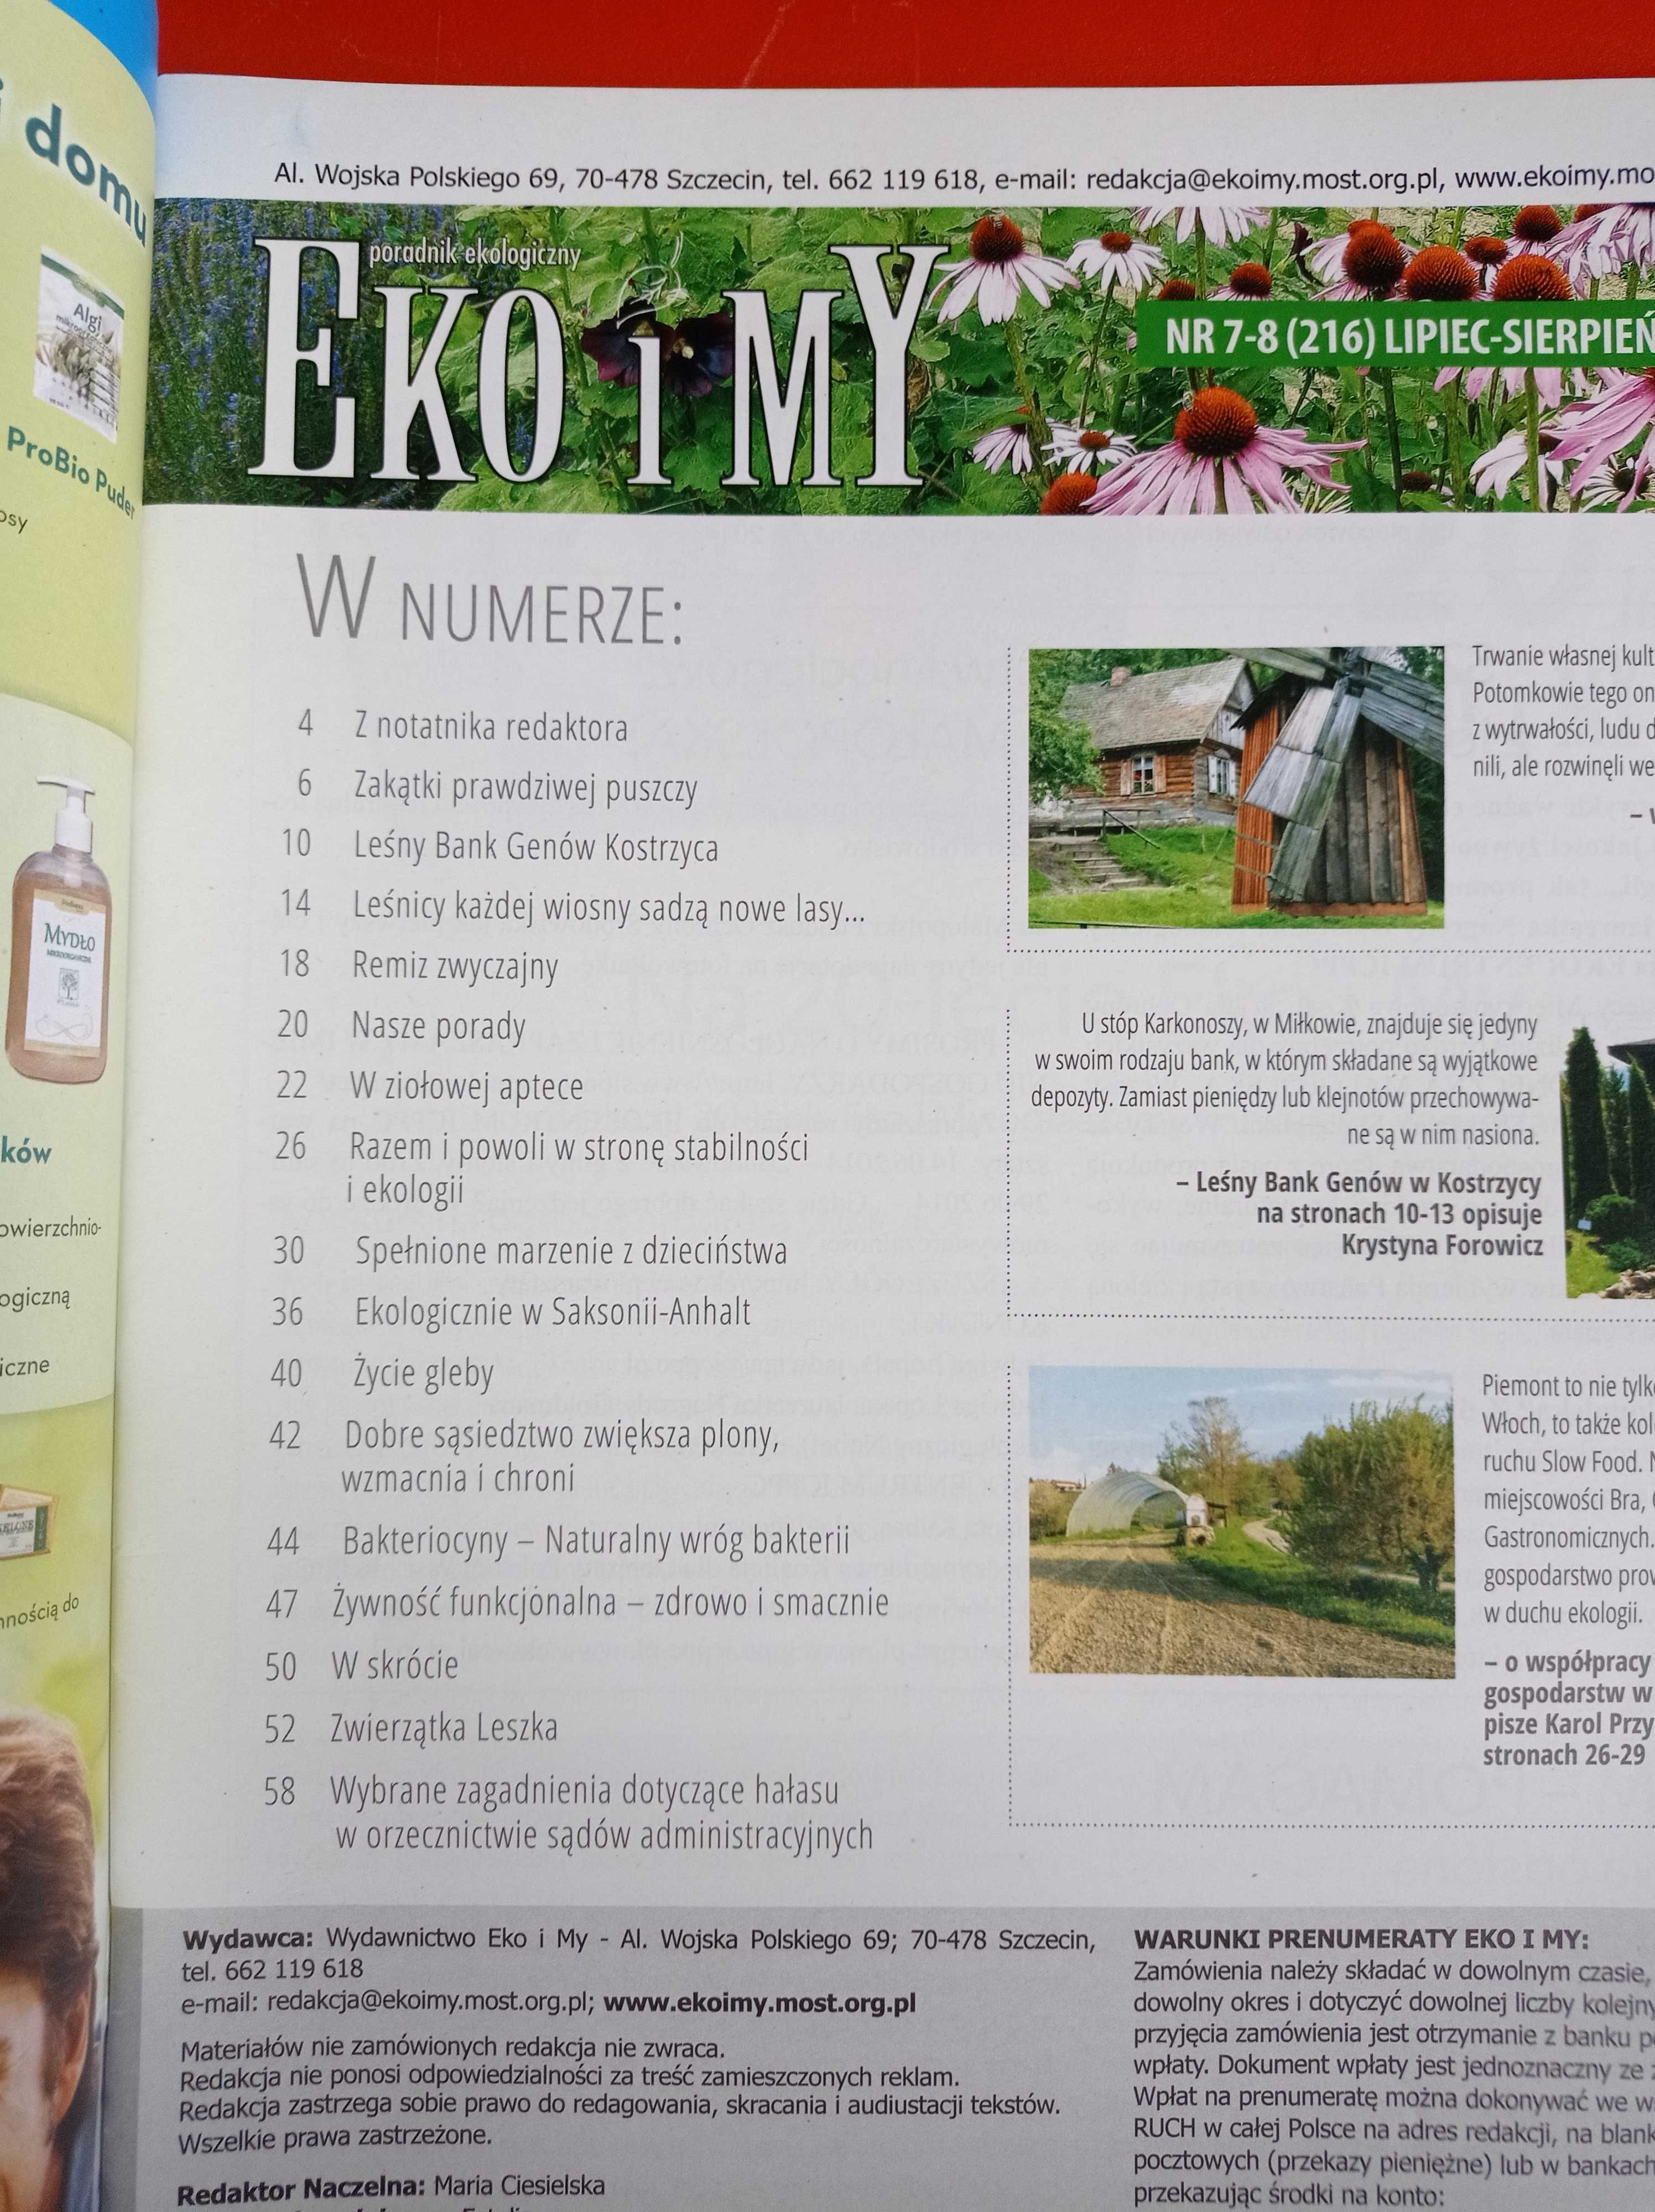 Eko i my, poradnik ekologiczny nr 7-8, lipiec-sierpień 2014